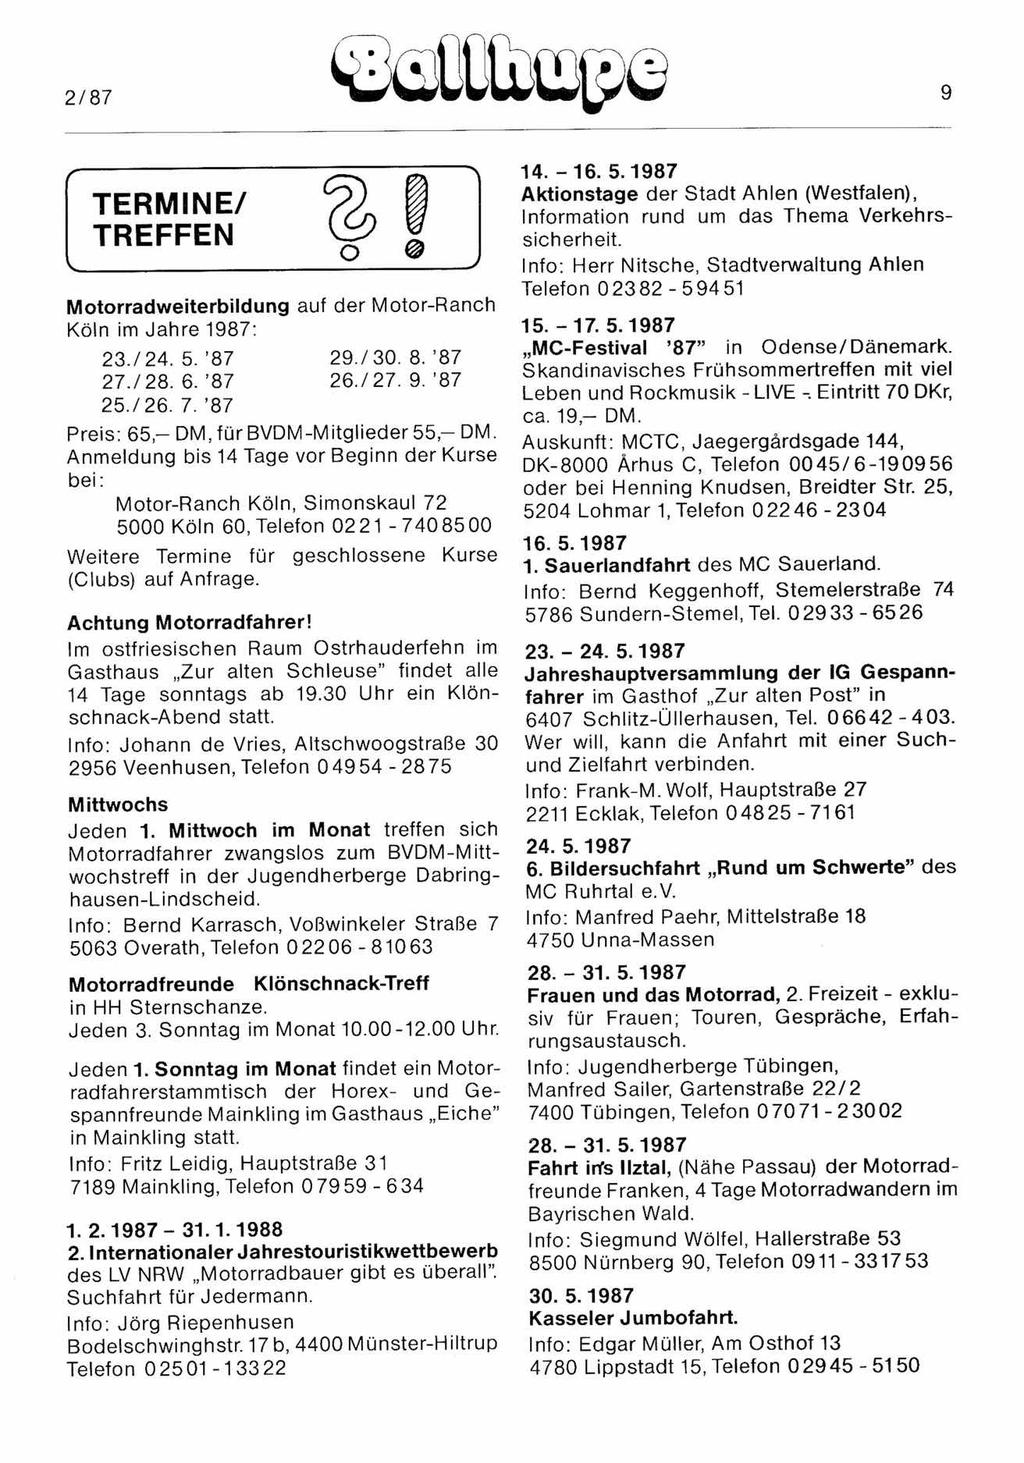 2/87 @@üilütflfp@. TERMINE/ TREFFEN @O Motorradweiterbildung auf der Motor-Ranch Köln im Jahre 1987: 23./24. 5. 87 29/30. 8. 87 27./28. 6. '87 26./27. 9. 87 25./26. 7.